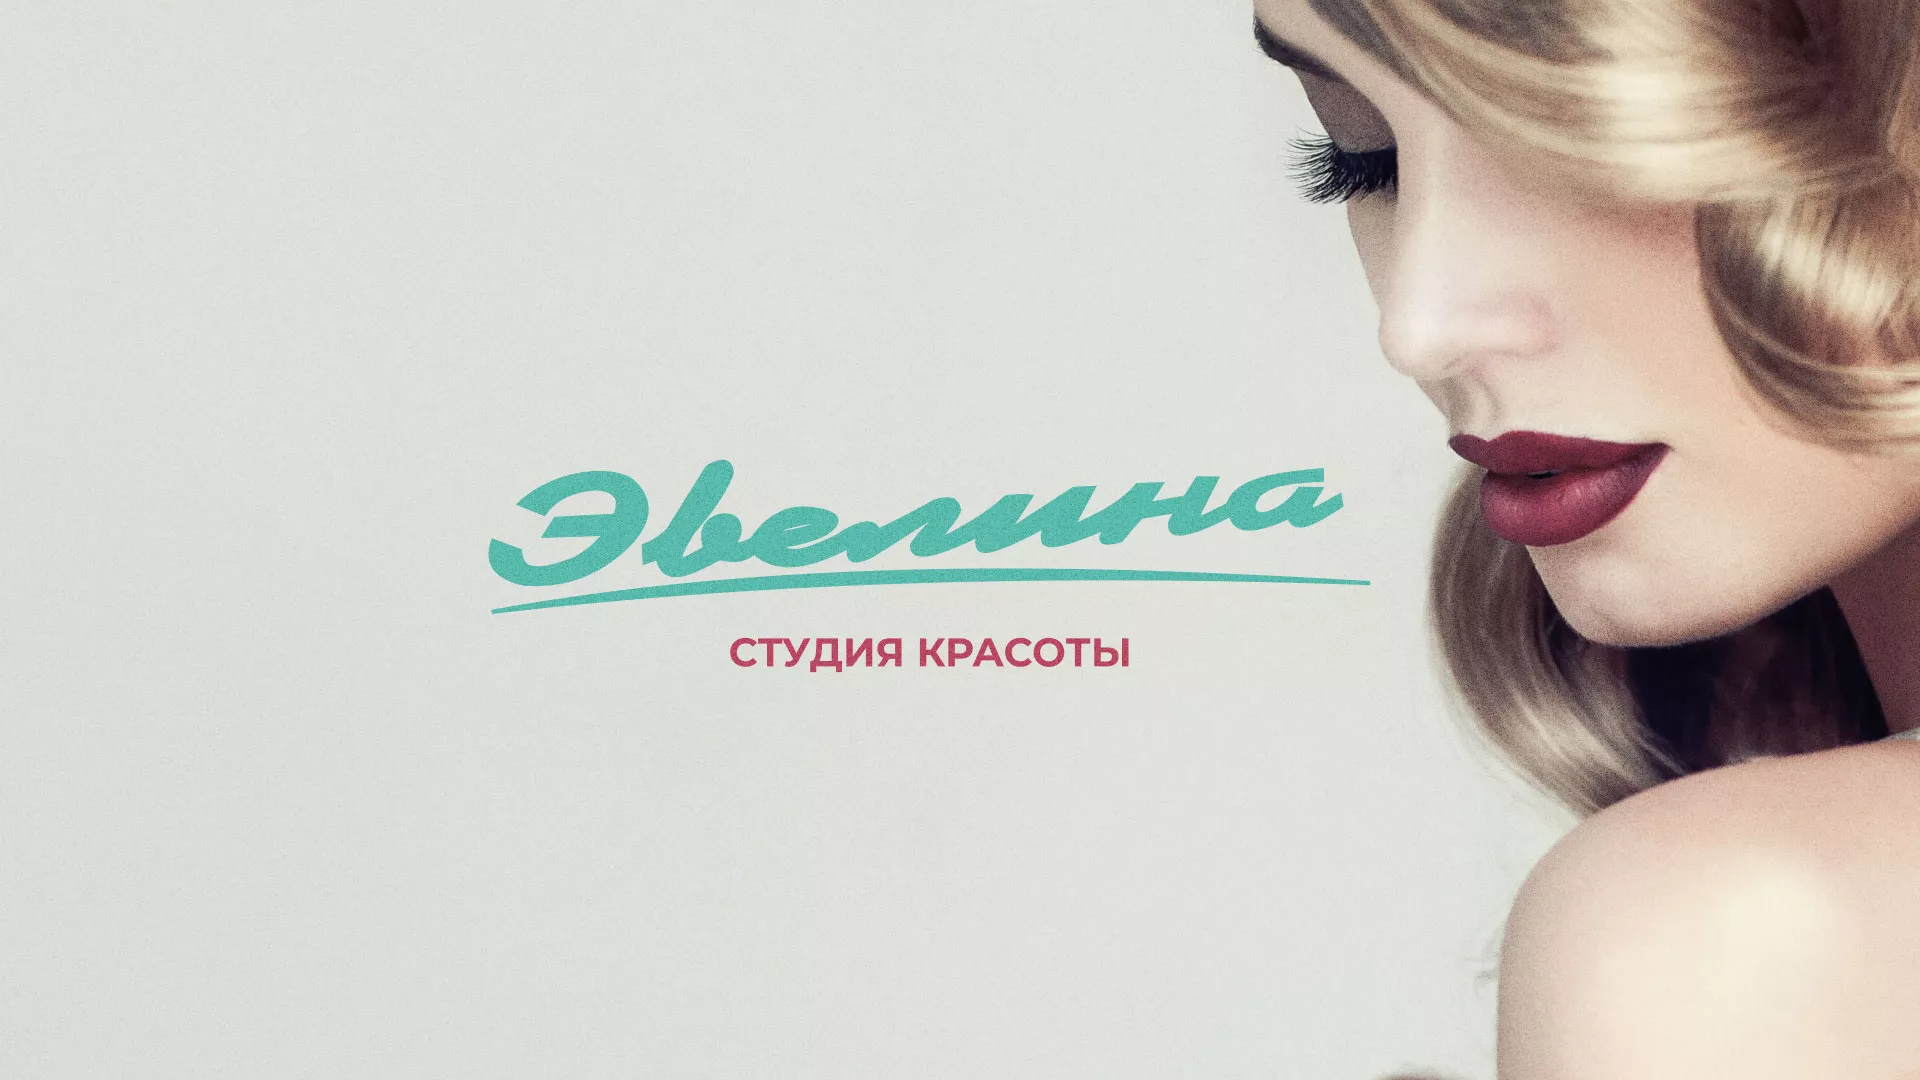 Разработка сайта для салона красоты «Эвелина» в Ставрополе